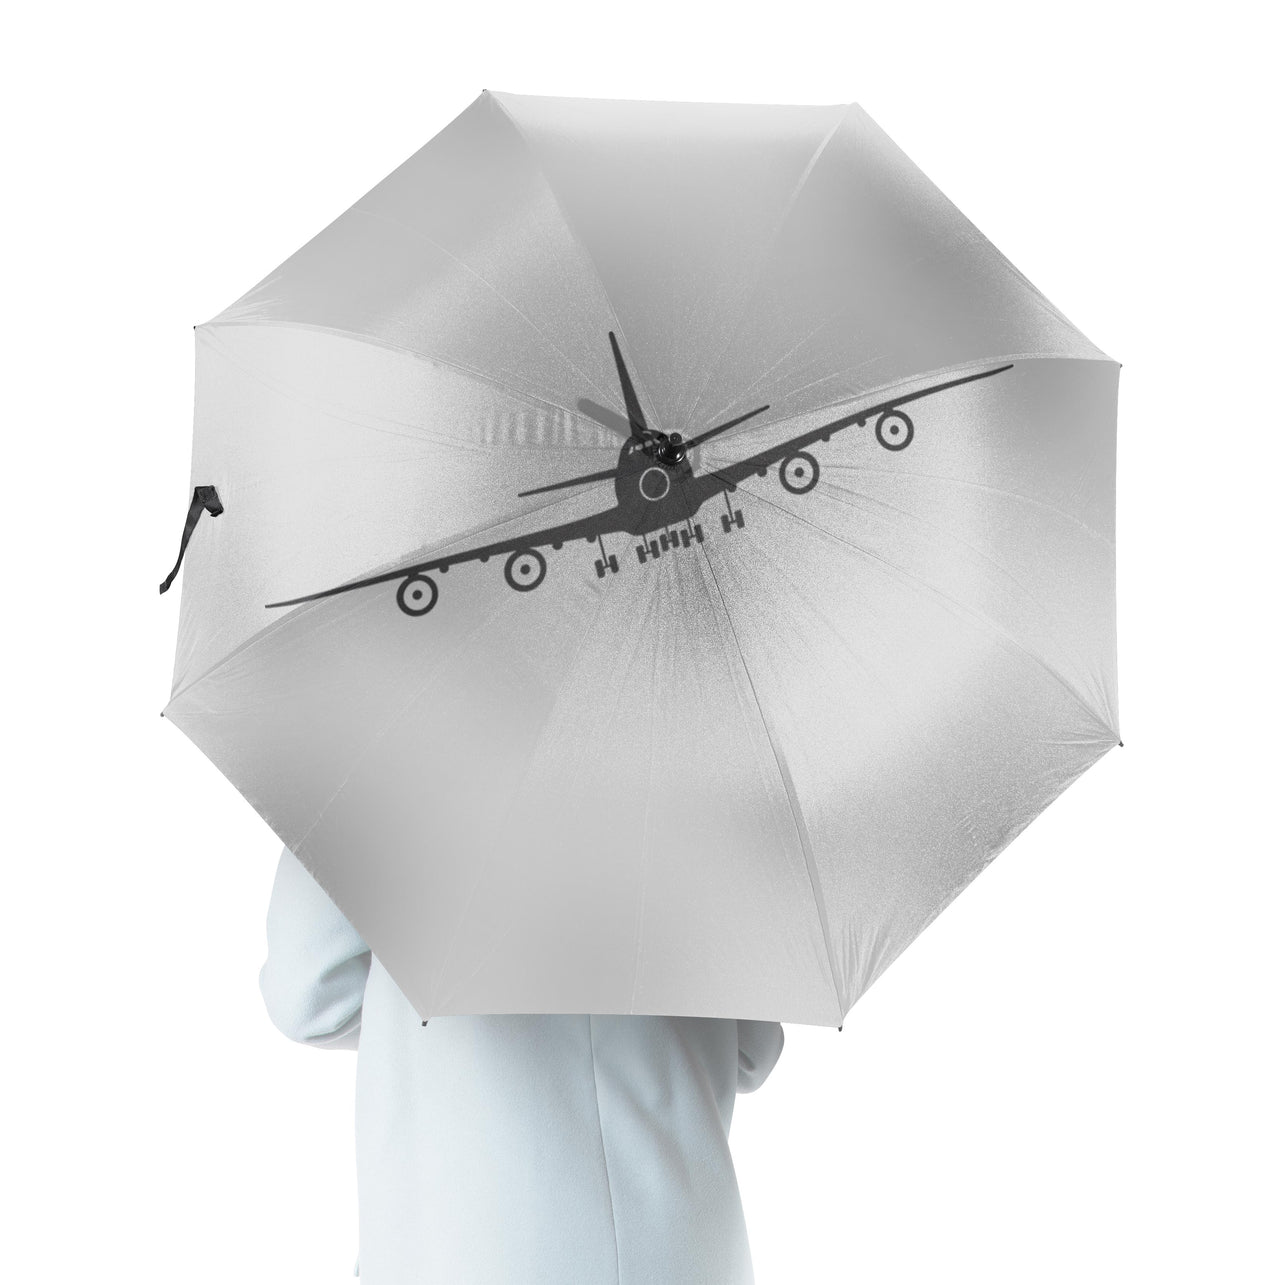 Boeing 747 Silhouette Designed Umbrella